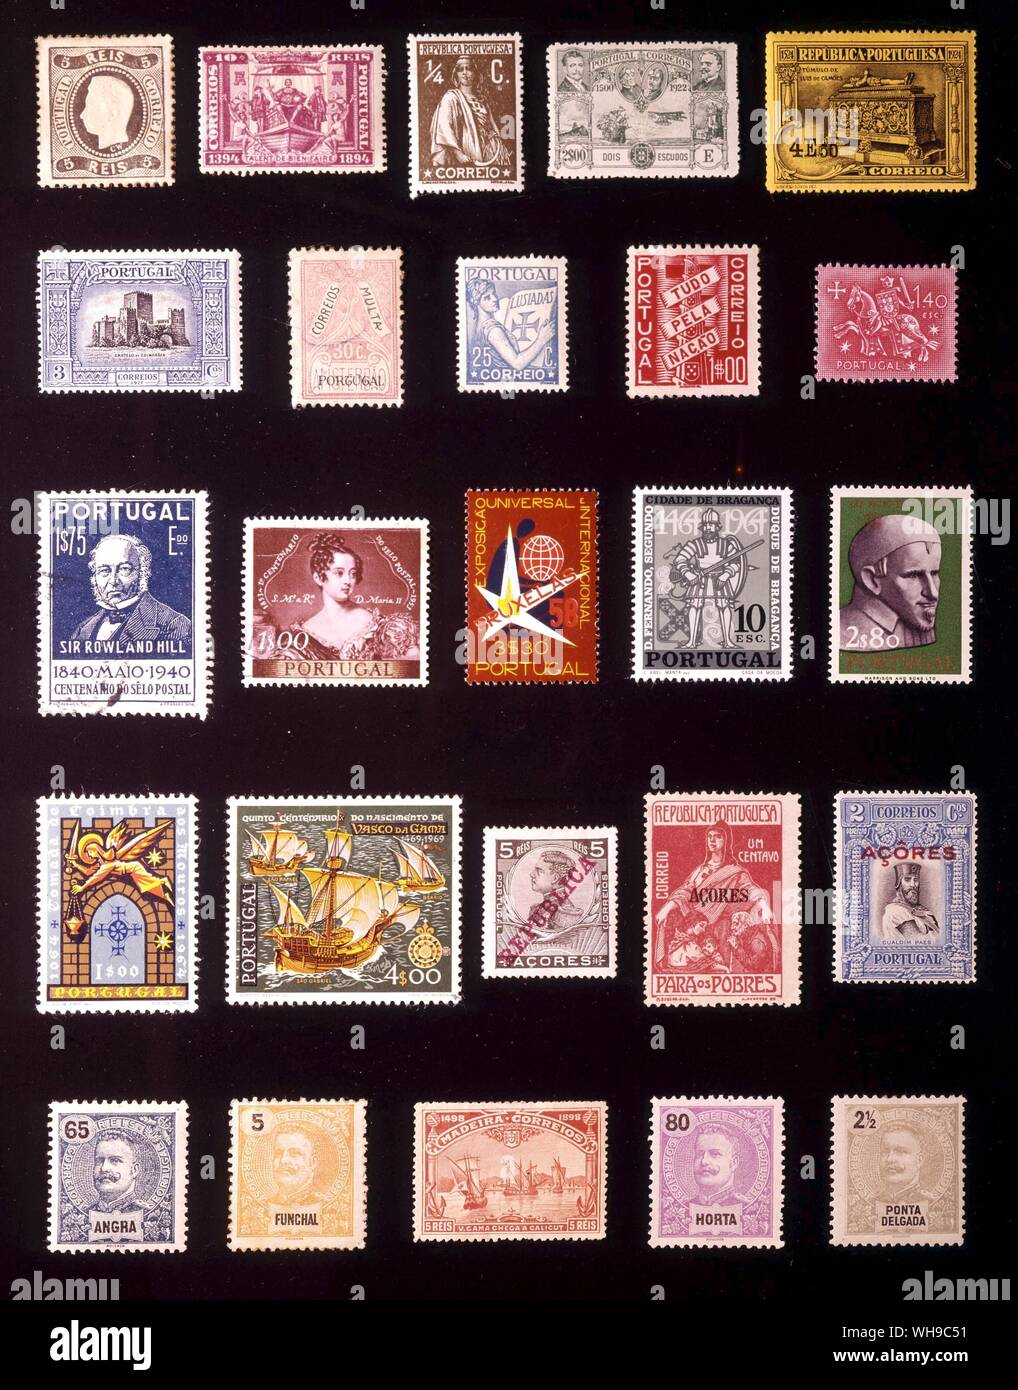 Europa - Portogallo: (da sinistra a destra) 1. 5 Reis, 1867, 2. 10 Reis, 1894, 3. 0,25 centavo, 1912, 4. escudos, 1923 5. 4 escudos, 1924, 6. 3 centavos, 1926, 7. 30 centavos, 1928, 8. 25 centavos, 1934, 9. 1 escudo, 1935, 10. 1.40 escudos, 1953, 11. 1,75 escudos, 1940, 12. 1 escudo, 1953, 13. 3.30 escudos, 1958, 14. 10 escudos, 1965, 15. 2,80 escudos, 1963, 16. 1 escudos, 1965, 17. 4 escudos, 1969, 18. Azzorre, 5 Reis, 1910, 19. Azzorre, 1 centavo, 1915, 20. Azzorre, 2 centavos, 1926, 21. Angra, 65 Reis, 1897, 22. Funchal, 5 Reis, 1897, 23. Madeeira, 5 Reis, 1898, 24. Horta, 80 Reis, 1897, 25 Ponta Foto Stock